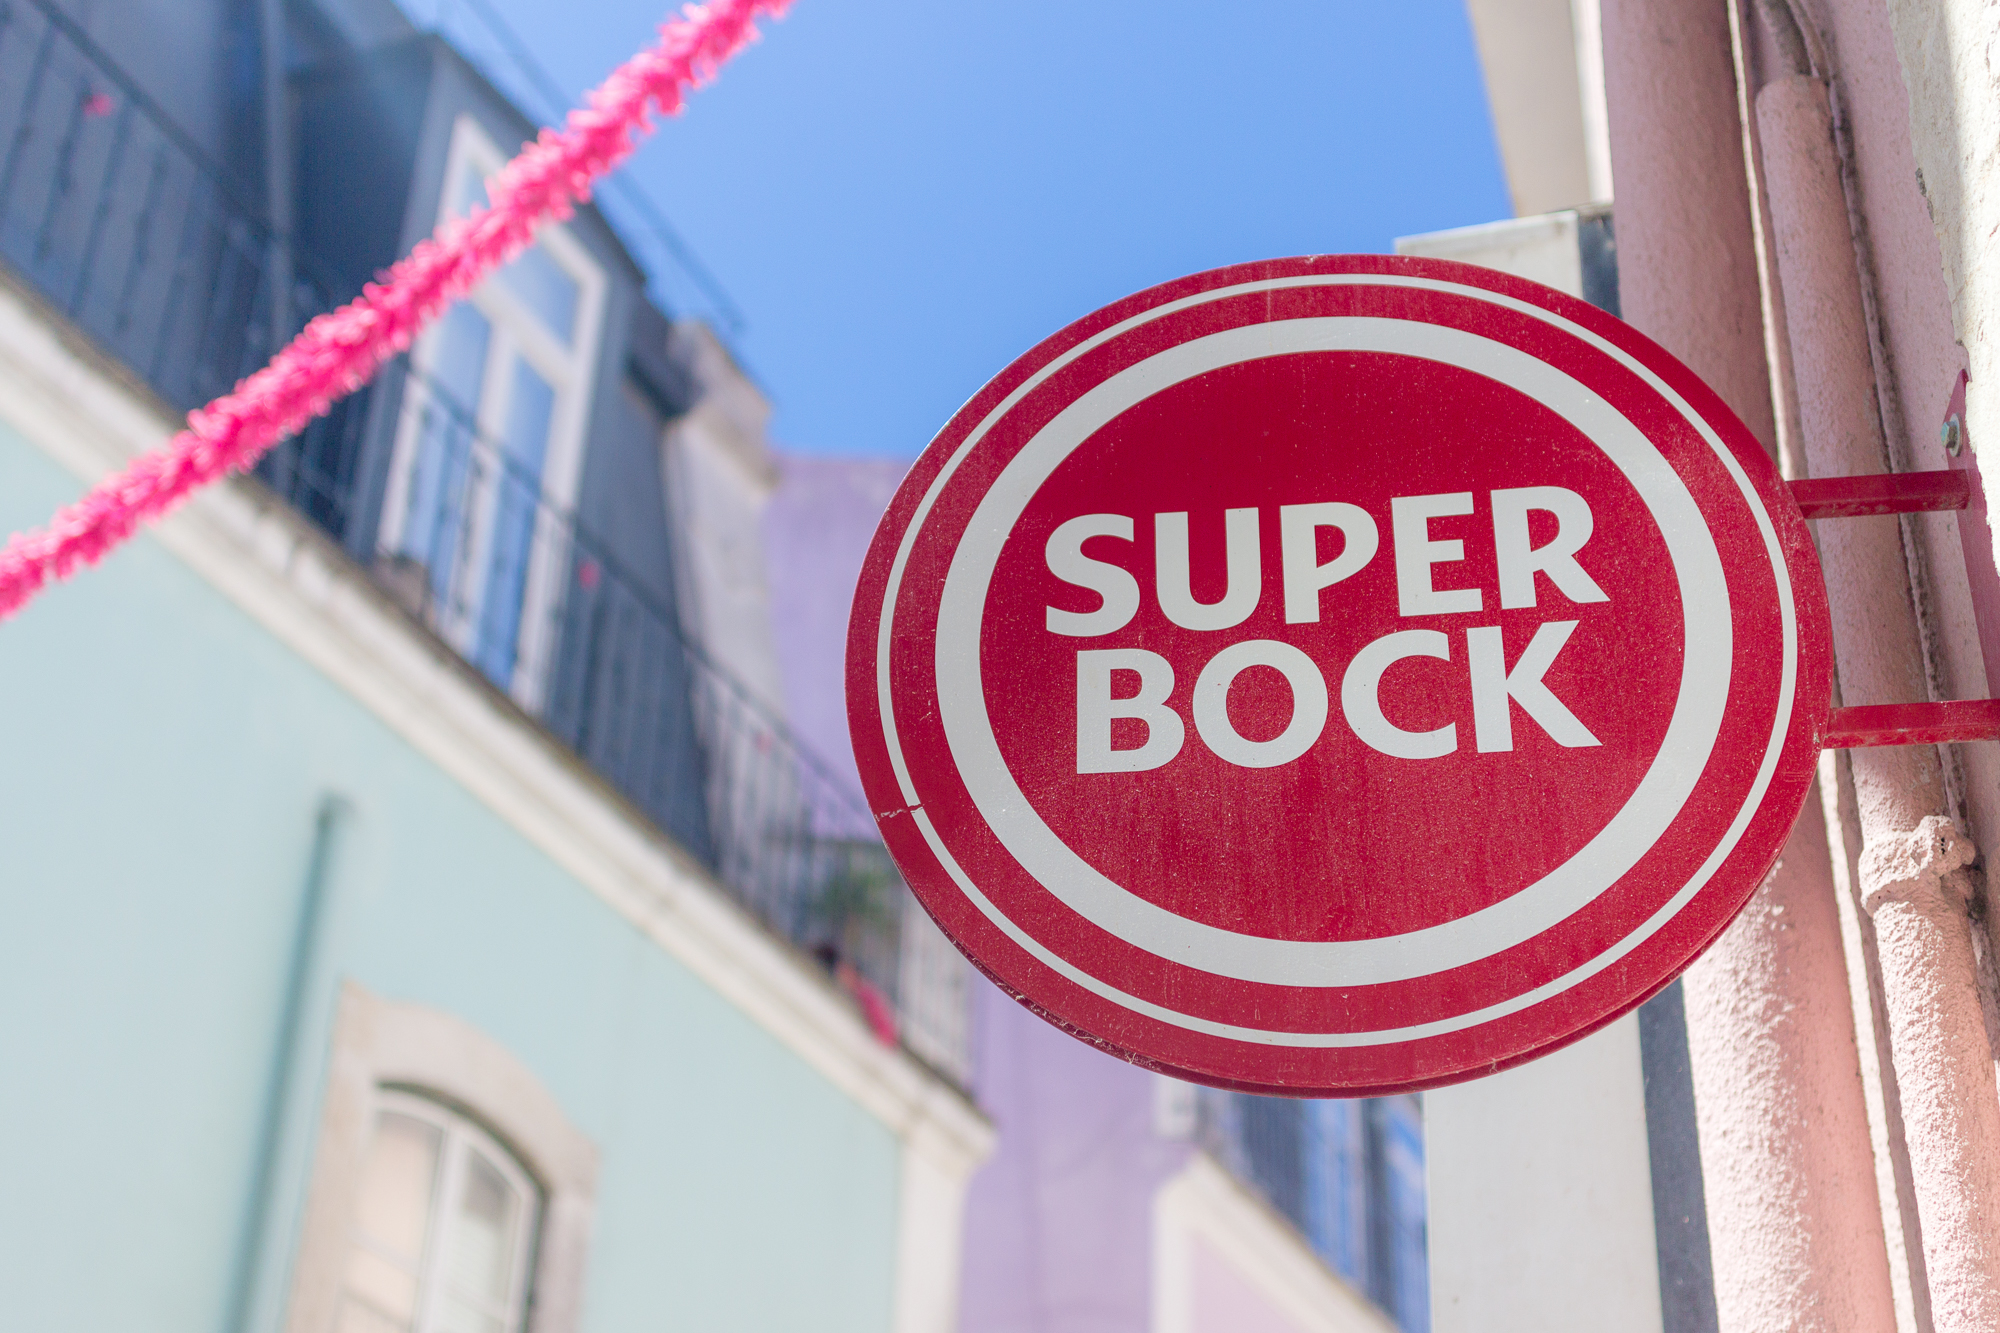 Panneau Super Bock, guirlande et façades pastels, Alfama, Lisbonne, Portugal